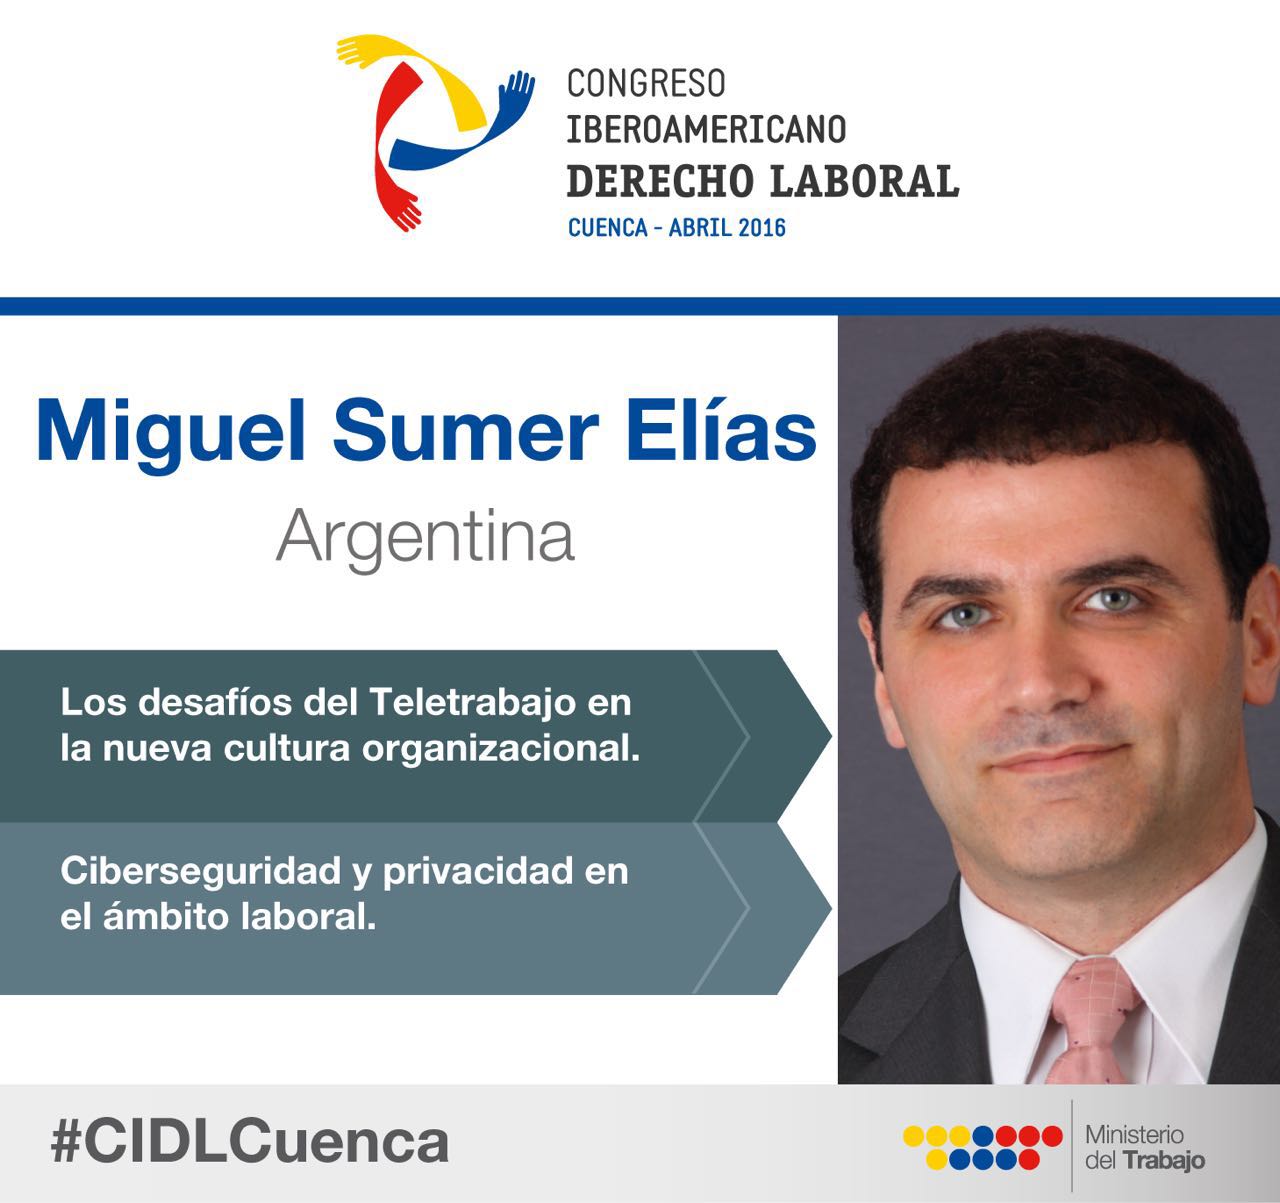 Miguel Sumer Elias Congreso Derecho Laboral